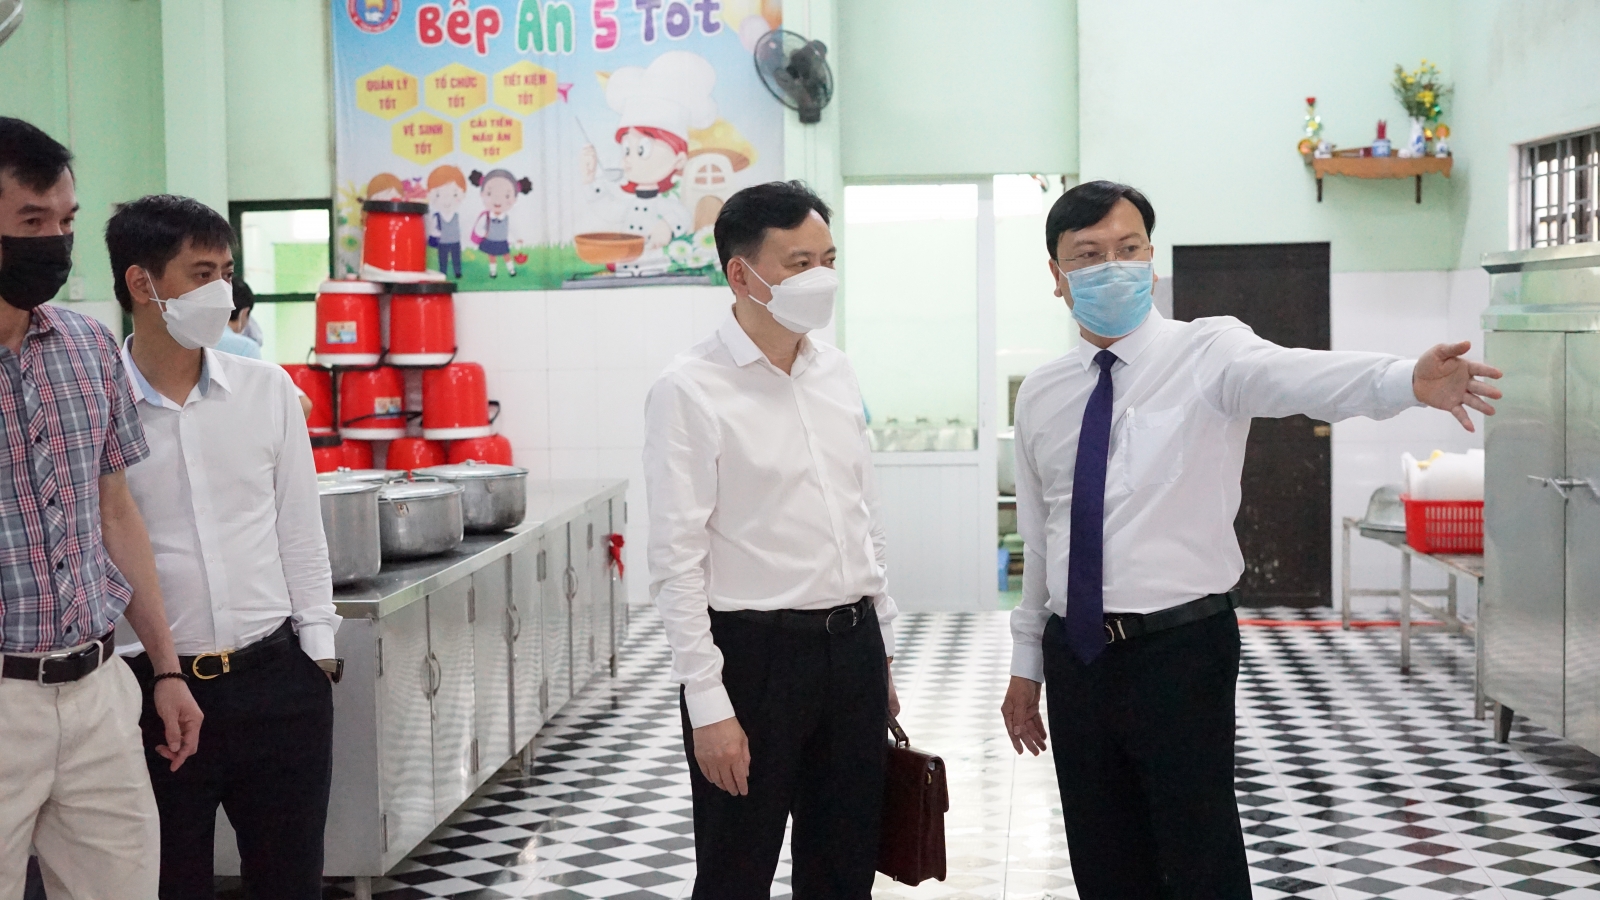 Đoàn công tác của Bộ GD&ĐT kiểm tra cơ sở vật chất trường học tại Thừa Thiên - Huế - Ảnh minh hoạ 2